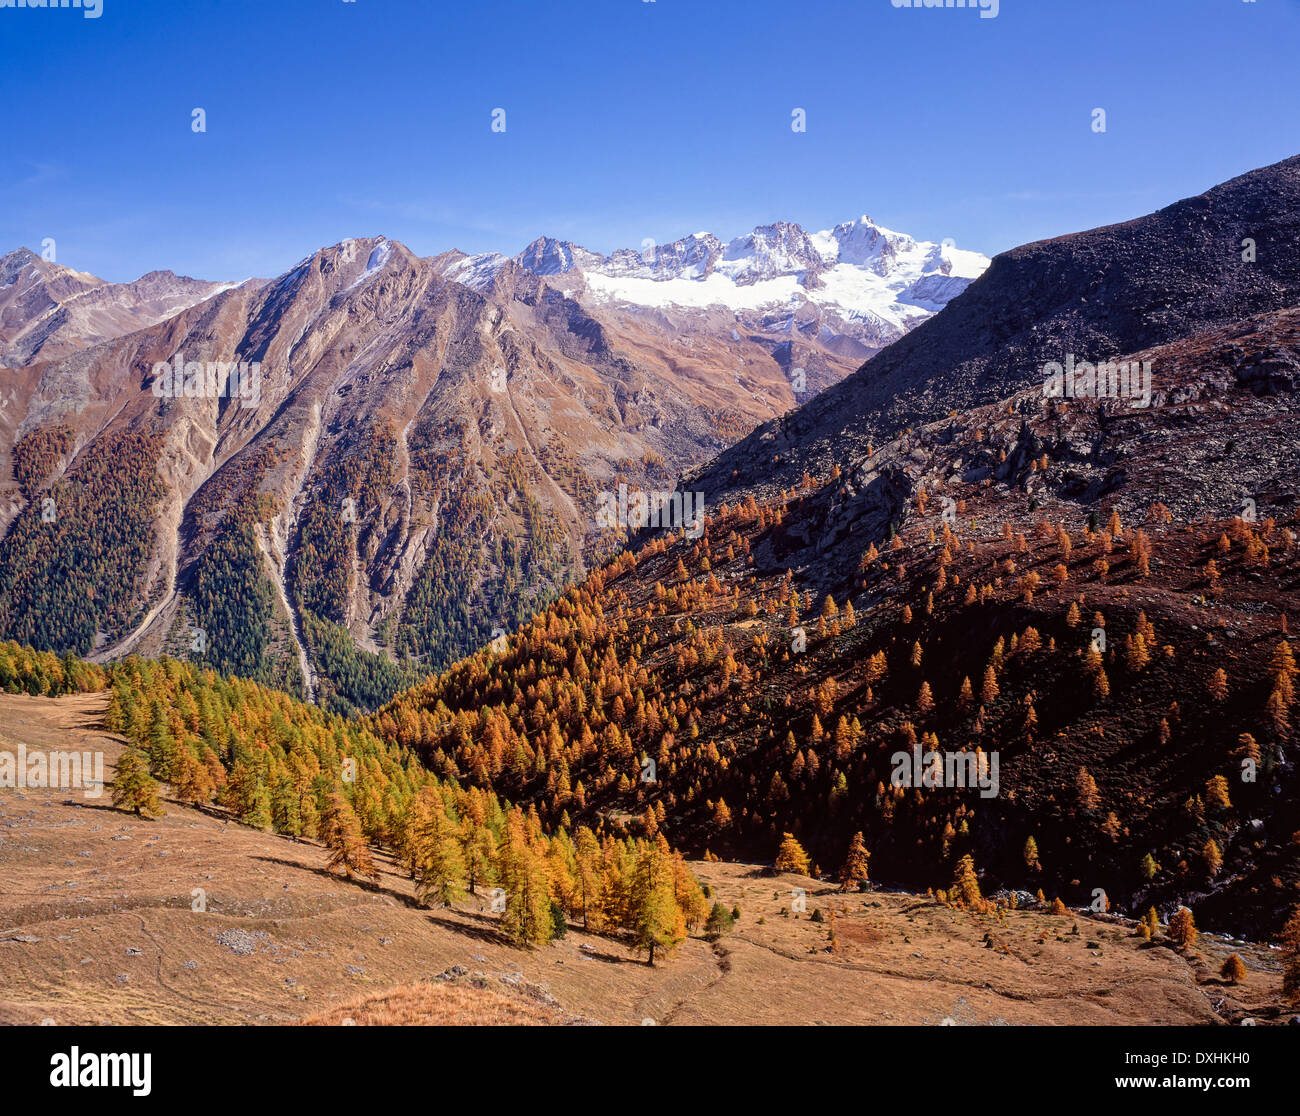 Valsavarenche il Parco Nazionale del Gran Paradiso Valle d Aosta Italy Stock Photo